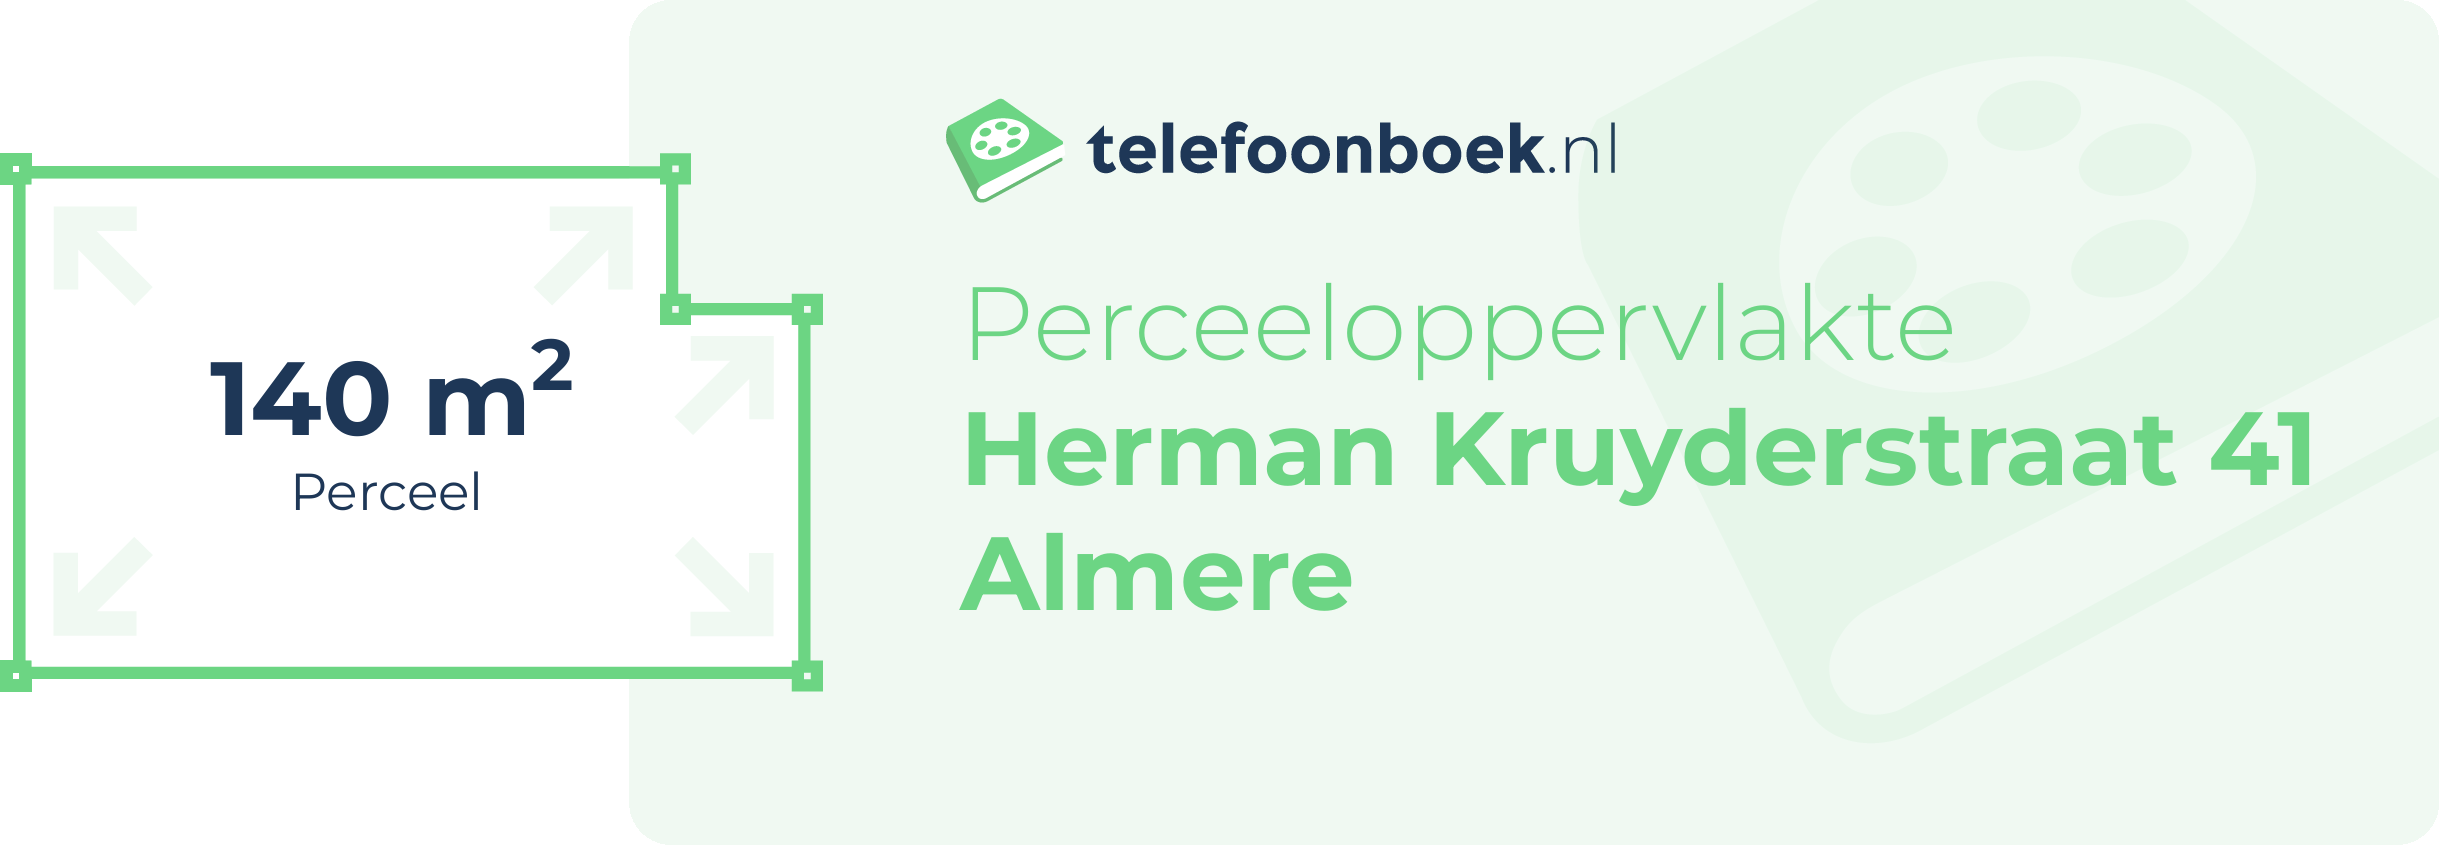 Perceeloppervlakte Herman Kruyderstraat 41 Almere